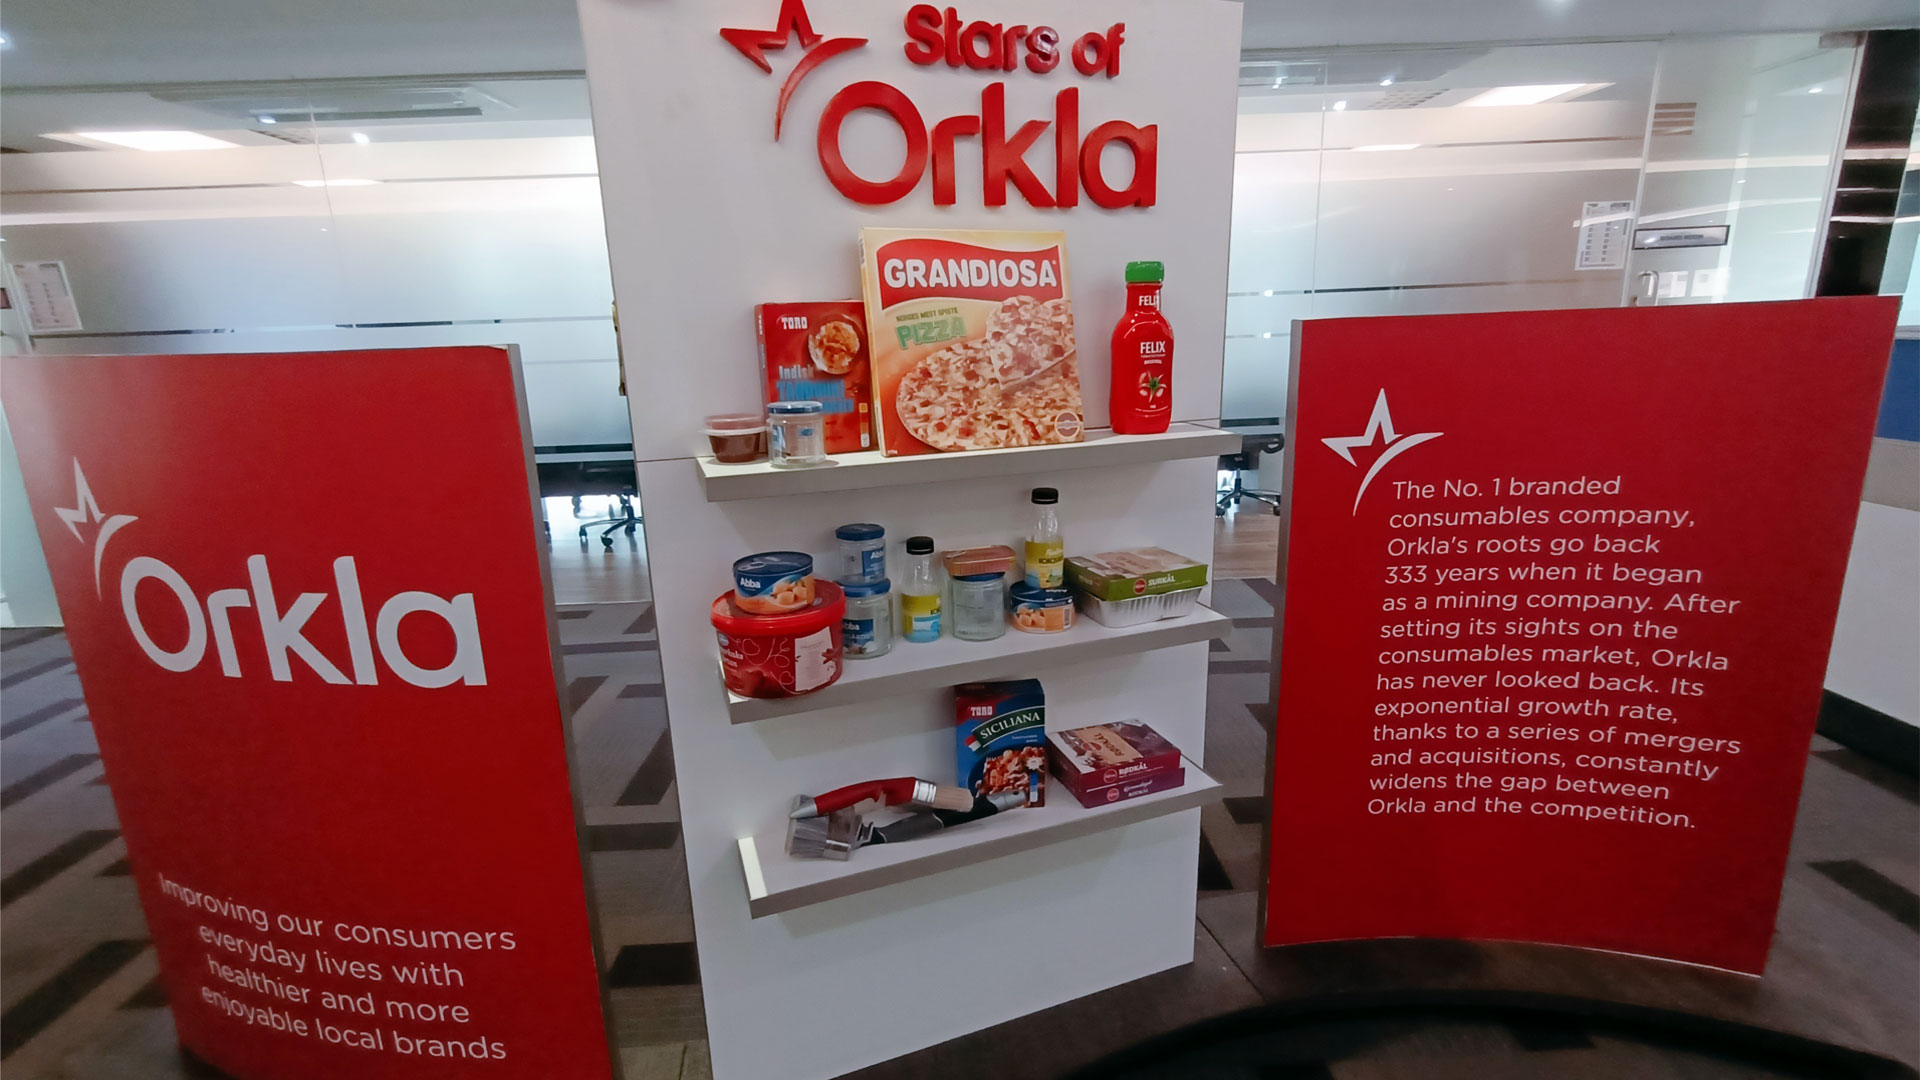 ORKLA MTR FOODS VISIT